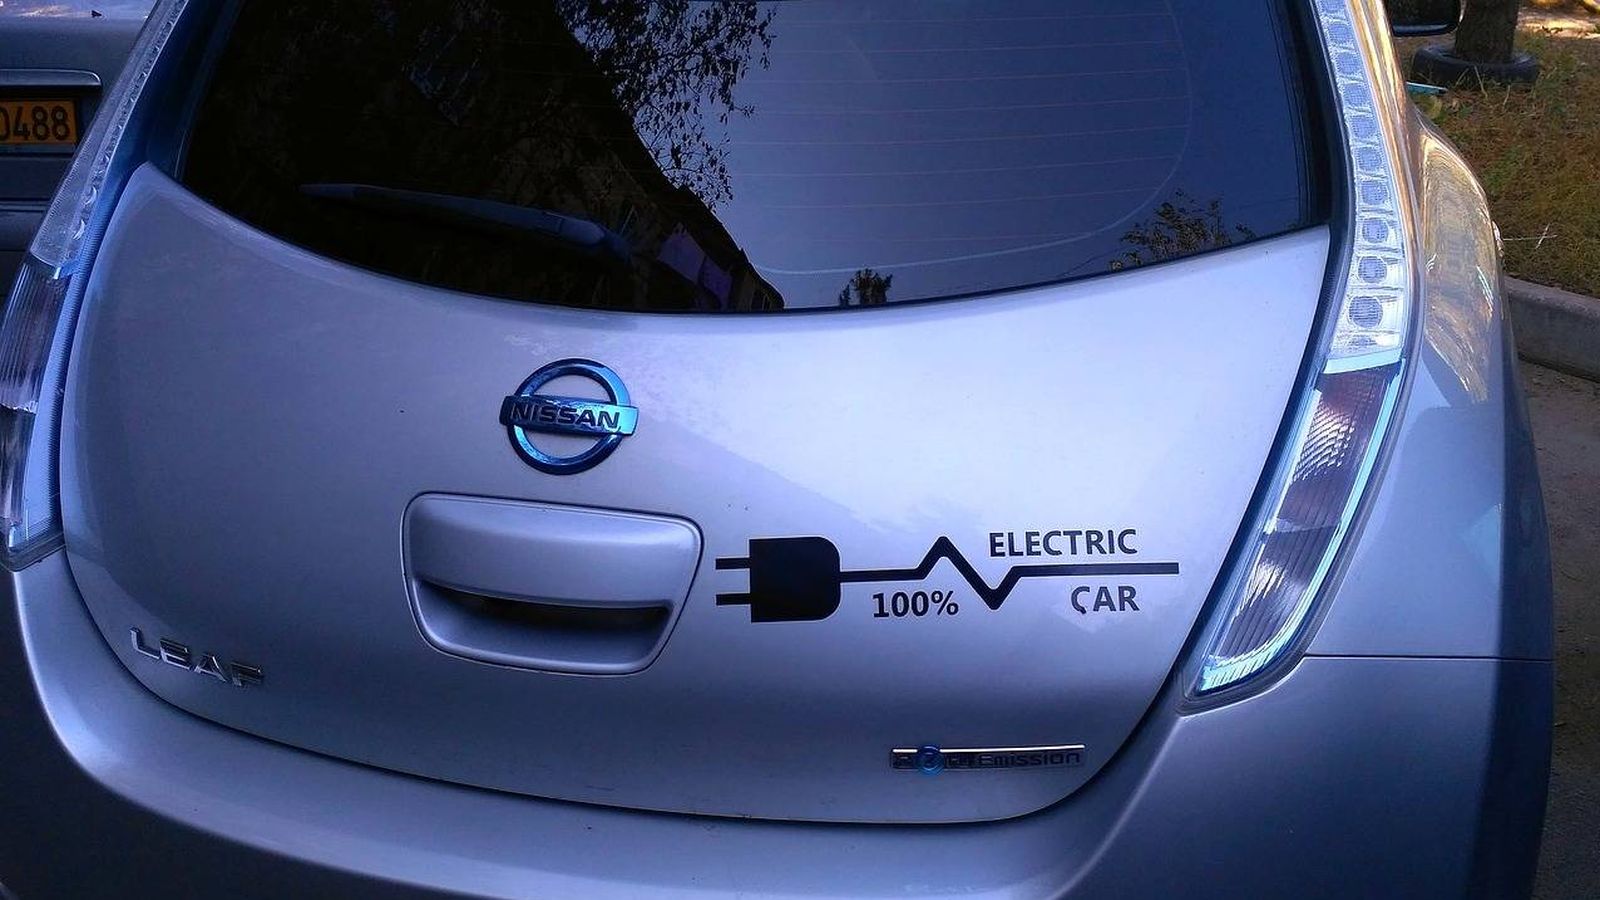 Foto: Los coches eléctricos son la opción más recomendable a día de hoy (Andy_Bay)